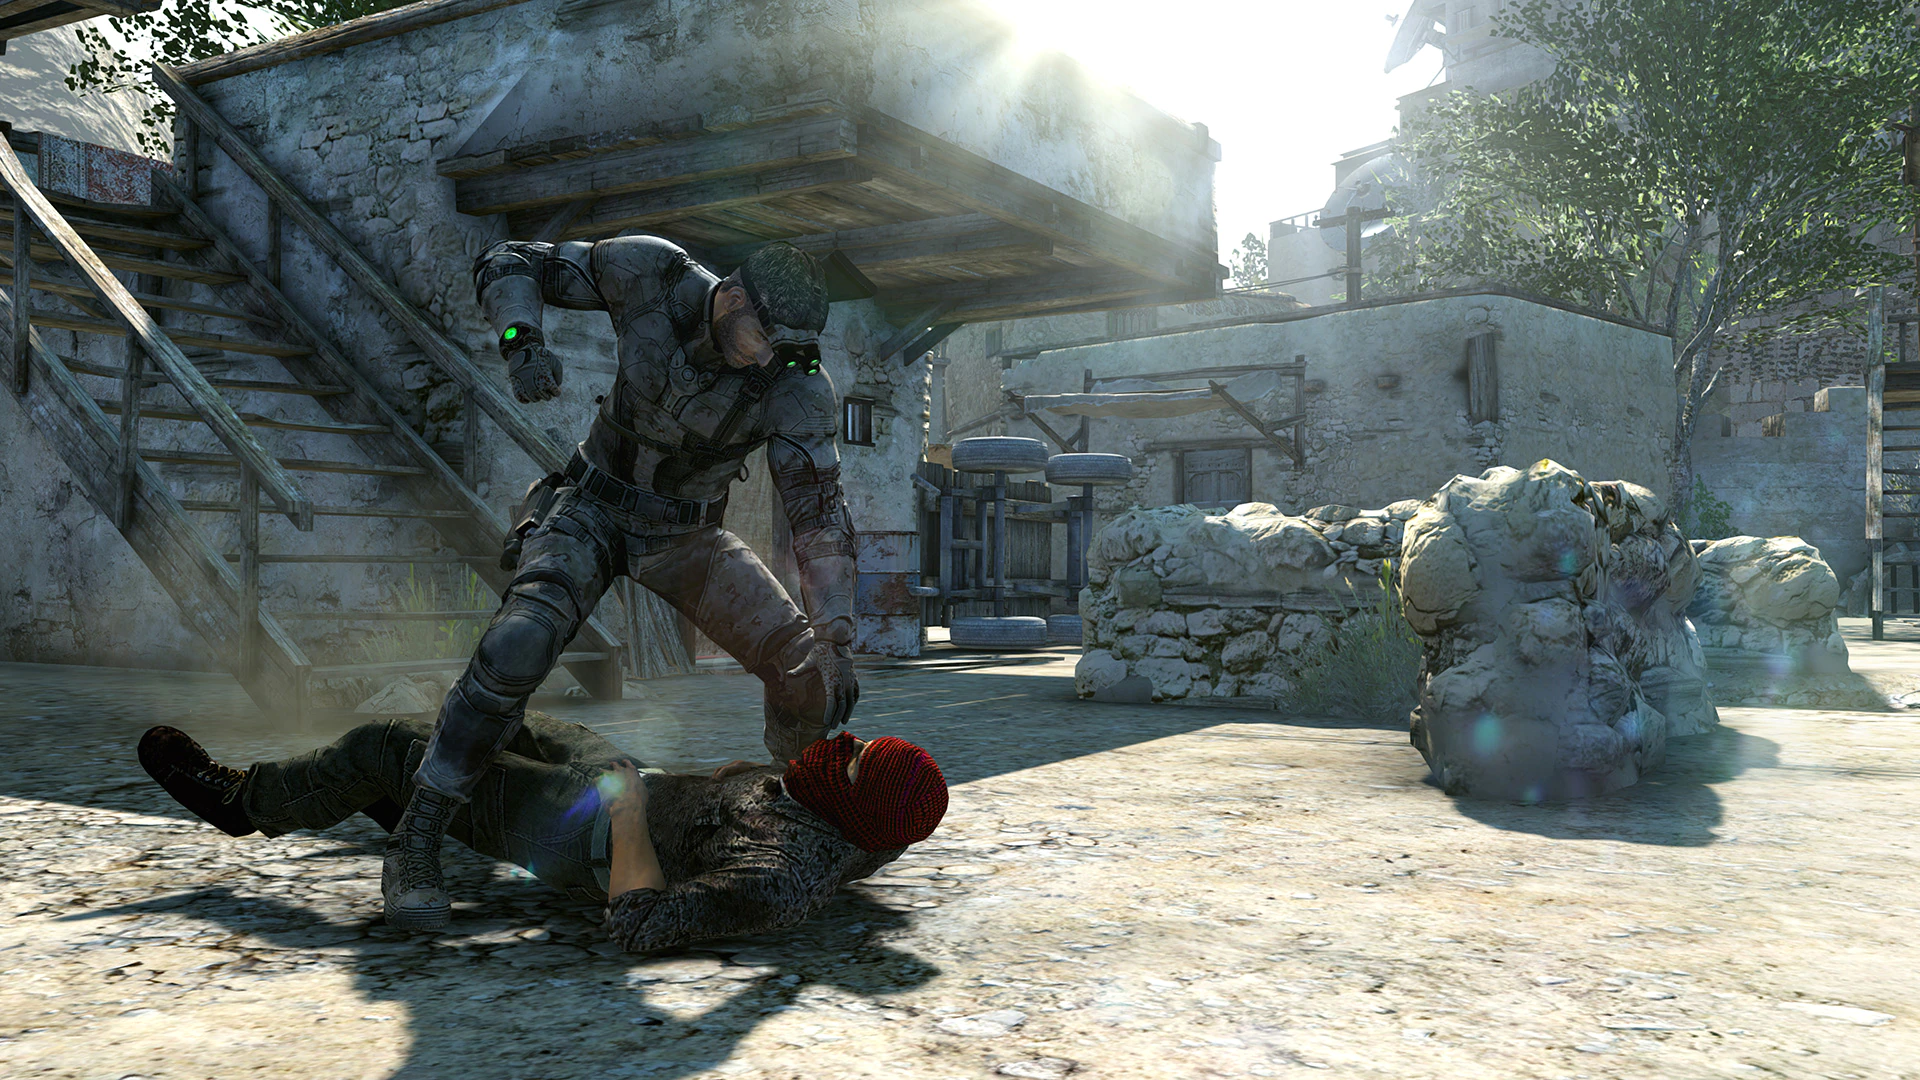 Imagem mostra cena do jogo Splinter Cell Blacklist, lançado em 2013. Cena mostra o protagonista Sam Fisher usando roupa militar tática, prestes a dar um soco em um inimigo caído